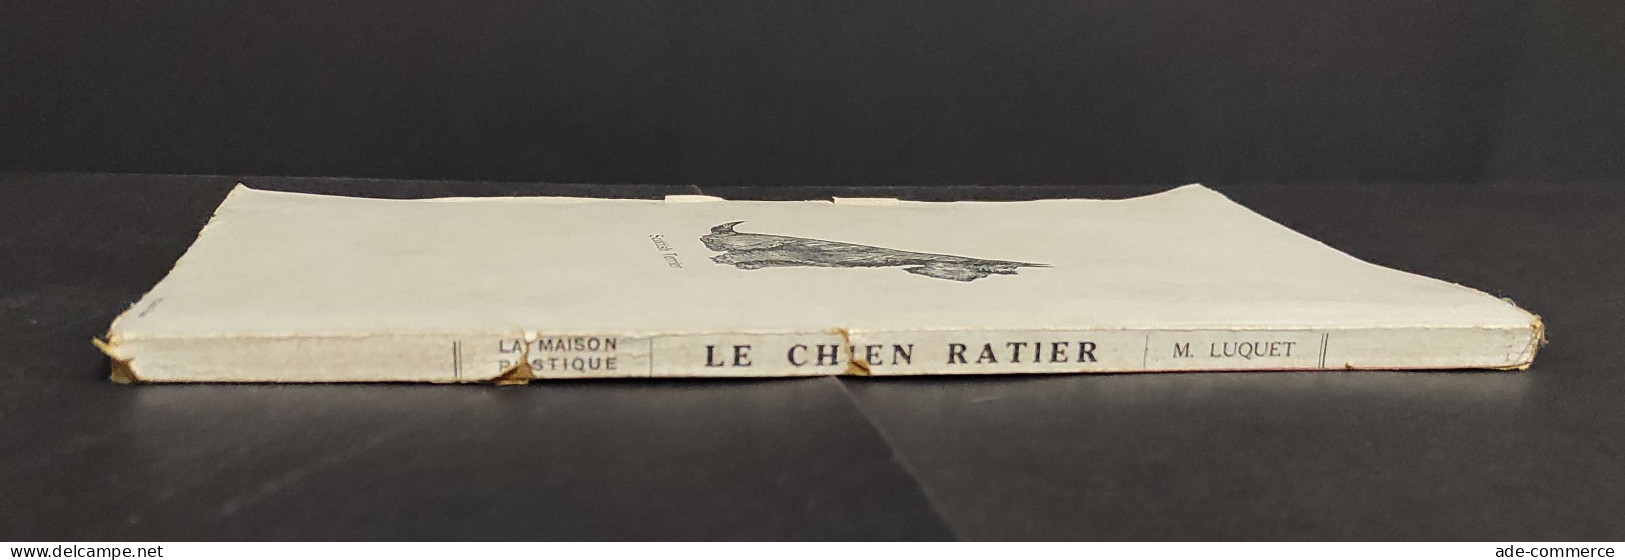 Le Chien Retier - M. Loquet                                                                                              - Animales De Compañía